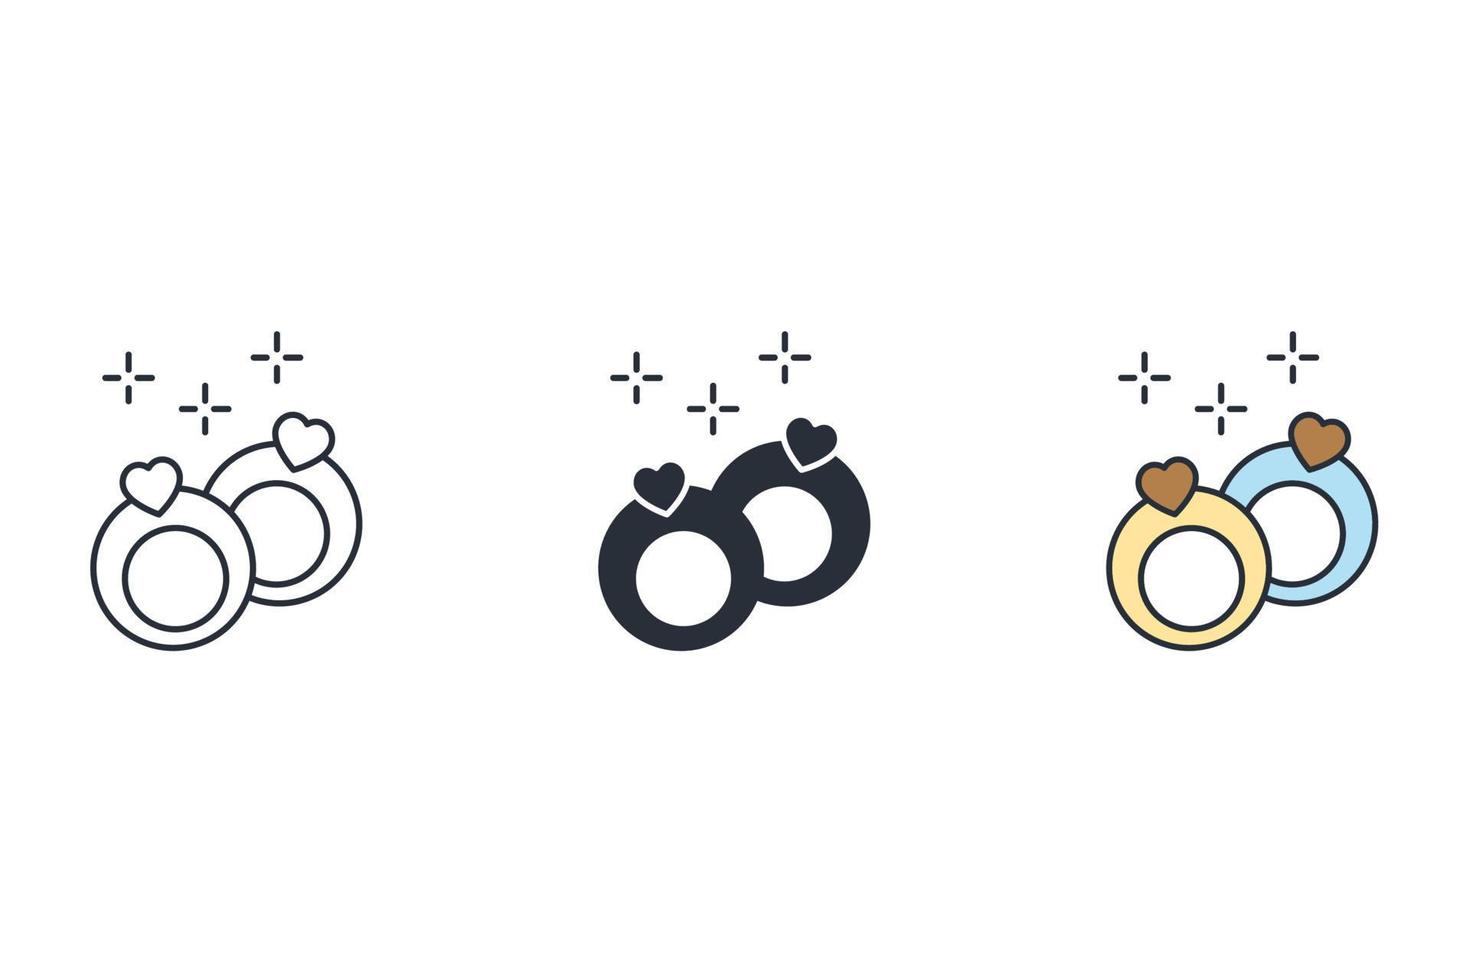 icone di nozze simbolo elementi vettoriali per il web infografica